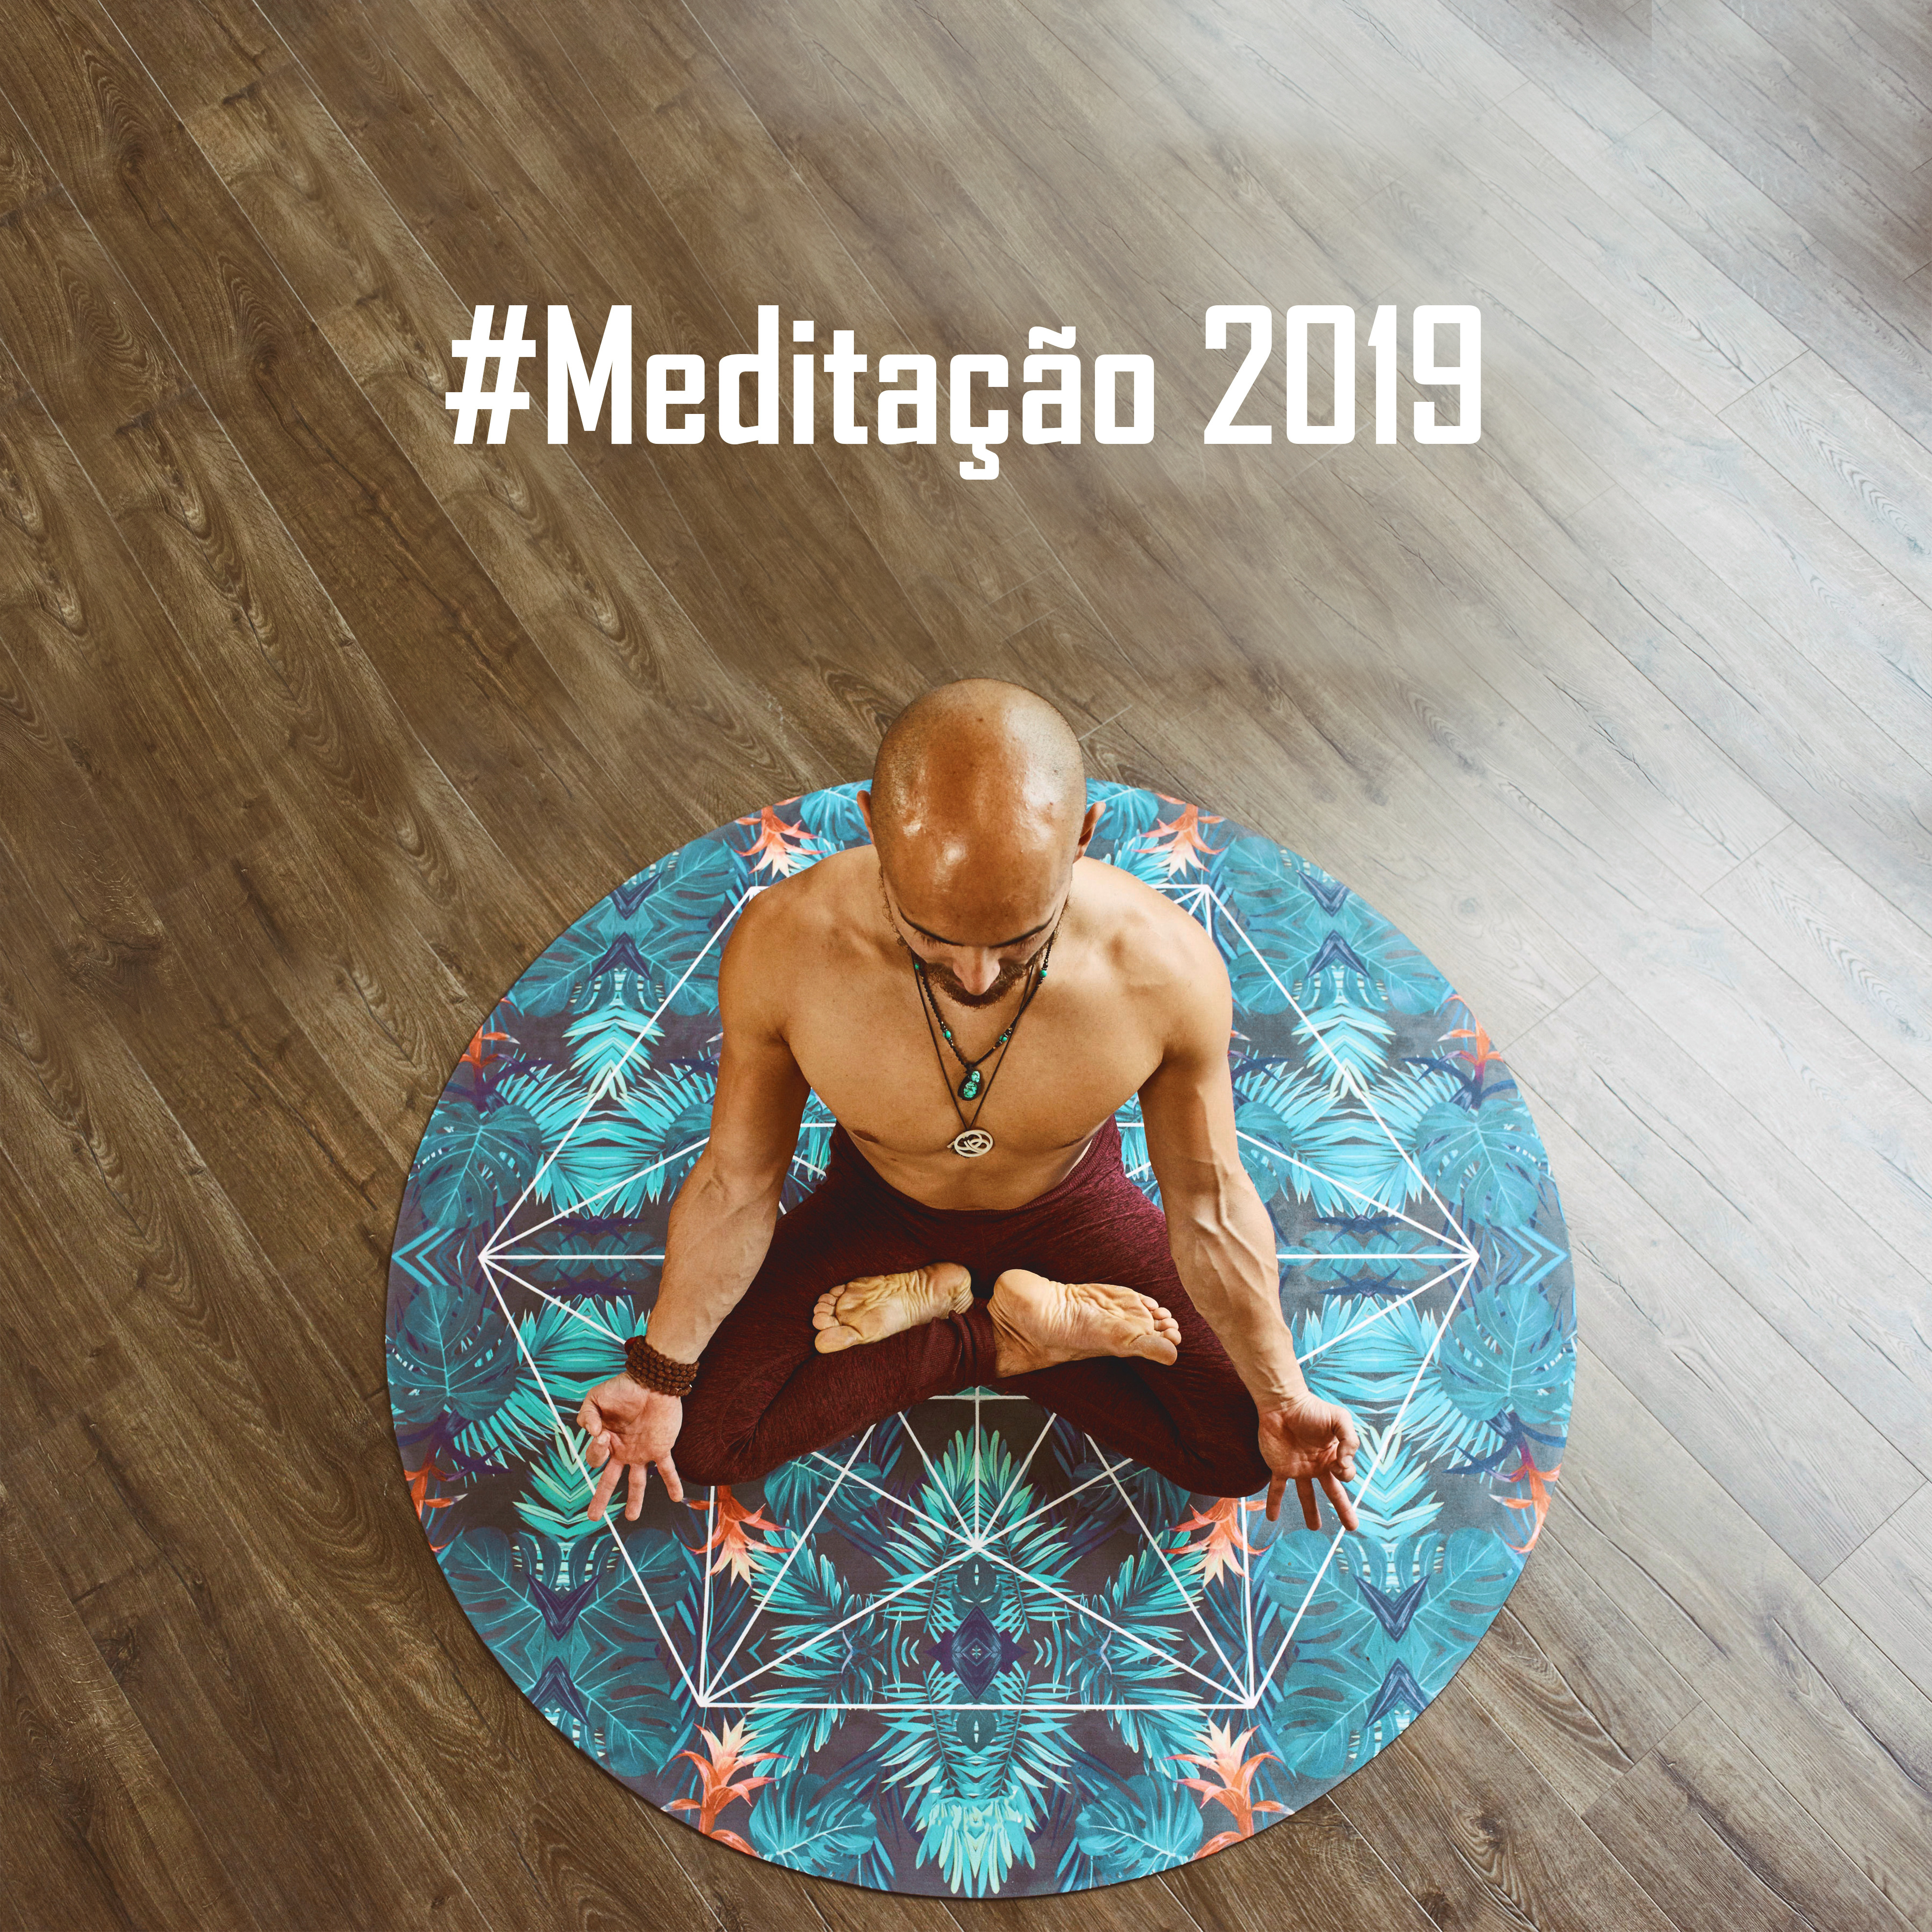 #Meditação 2019: Música New Age para Relaxamento, Dormir, Harmonia Interior, Despertar Espiritual, Meditação Profunda, Música Zen, Música de Yoga 2019